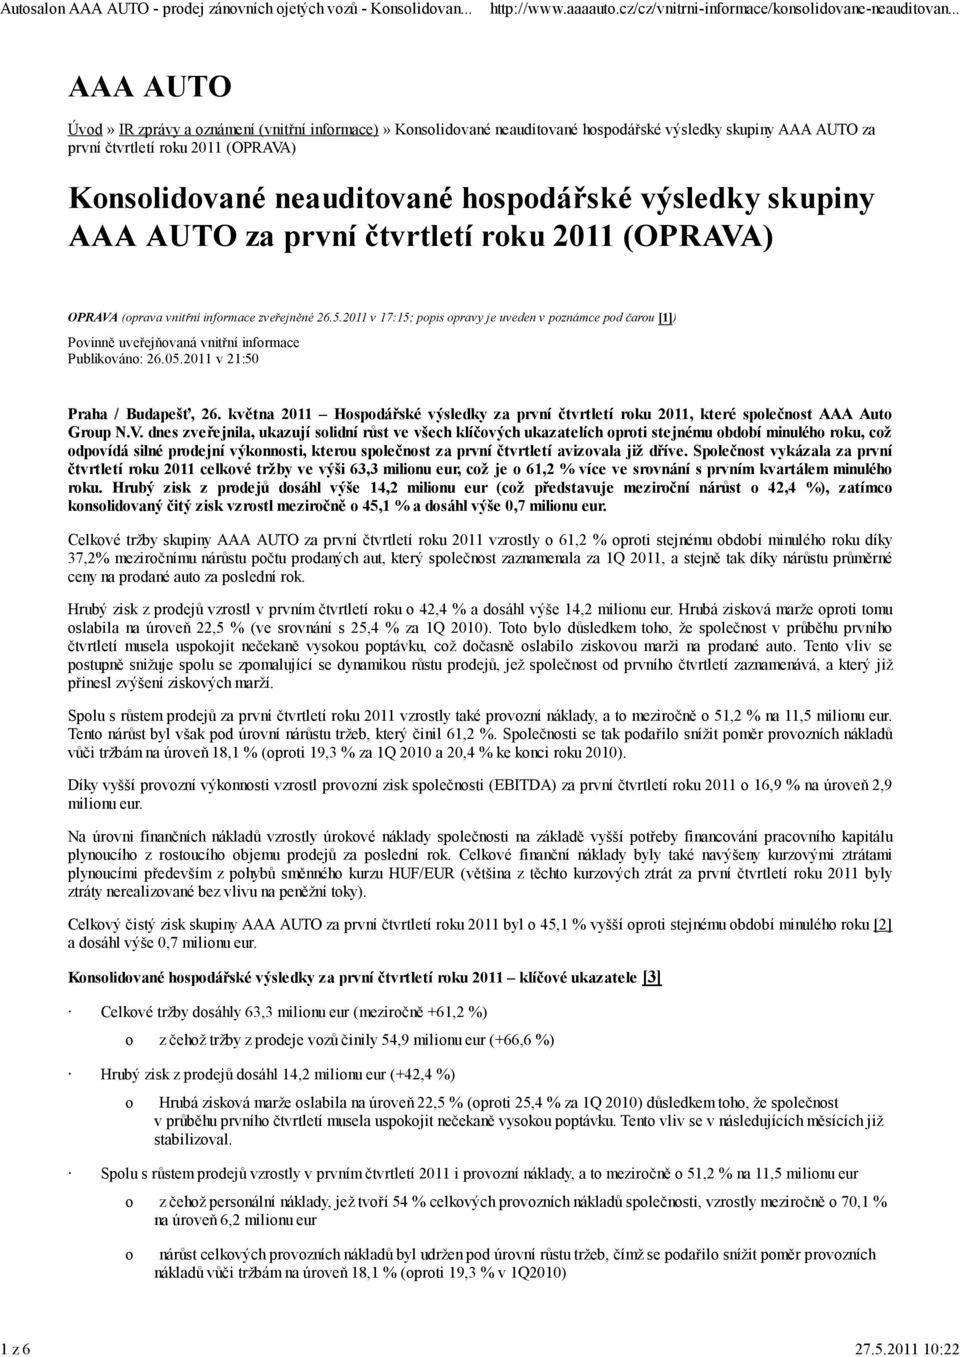 hospodářské výsledky skupiny AAA AUTO za první čtvrtletí roku 2011 (OPRAVA) OPRAVA (oprava vnitřní informace zveřejněné 26.5.